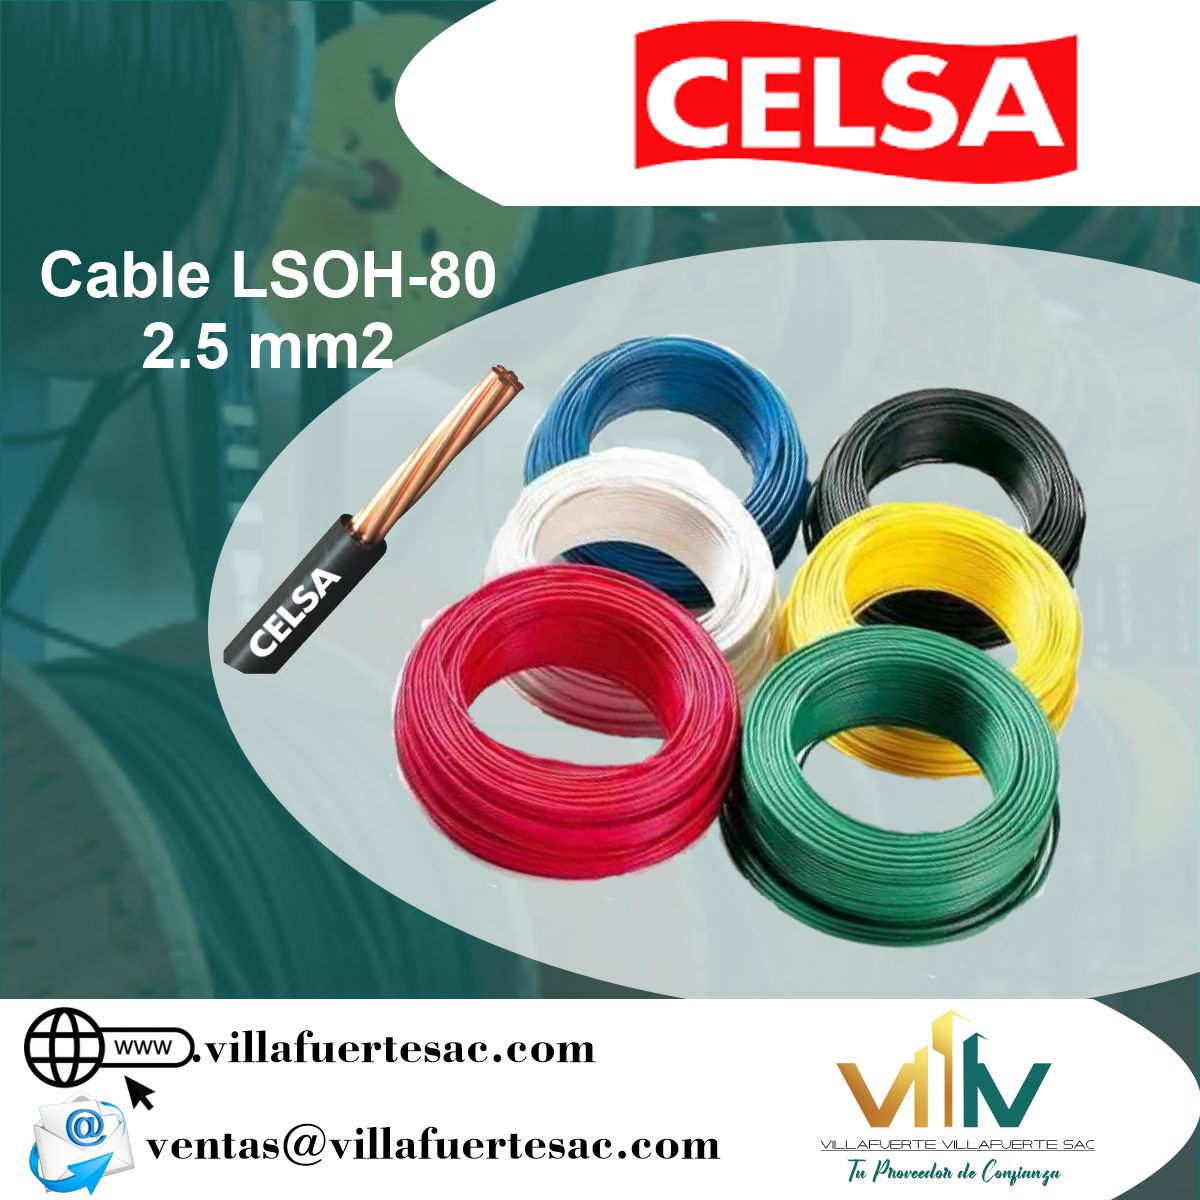 Cable LSOH Celsa 2.5mm - Villafuerte Villafuerte S.A.C